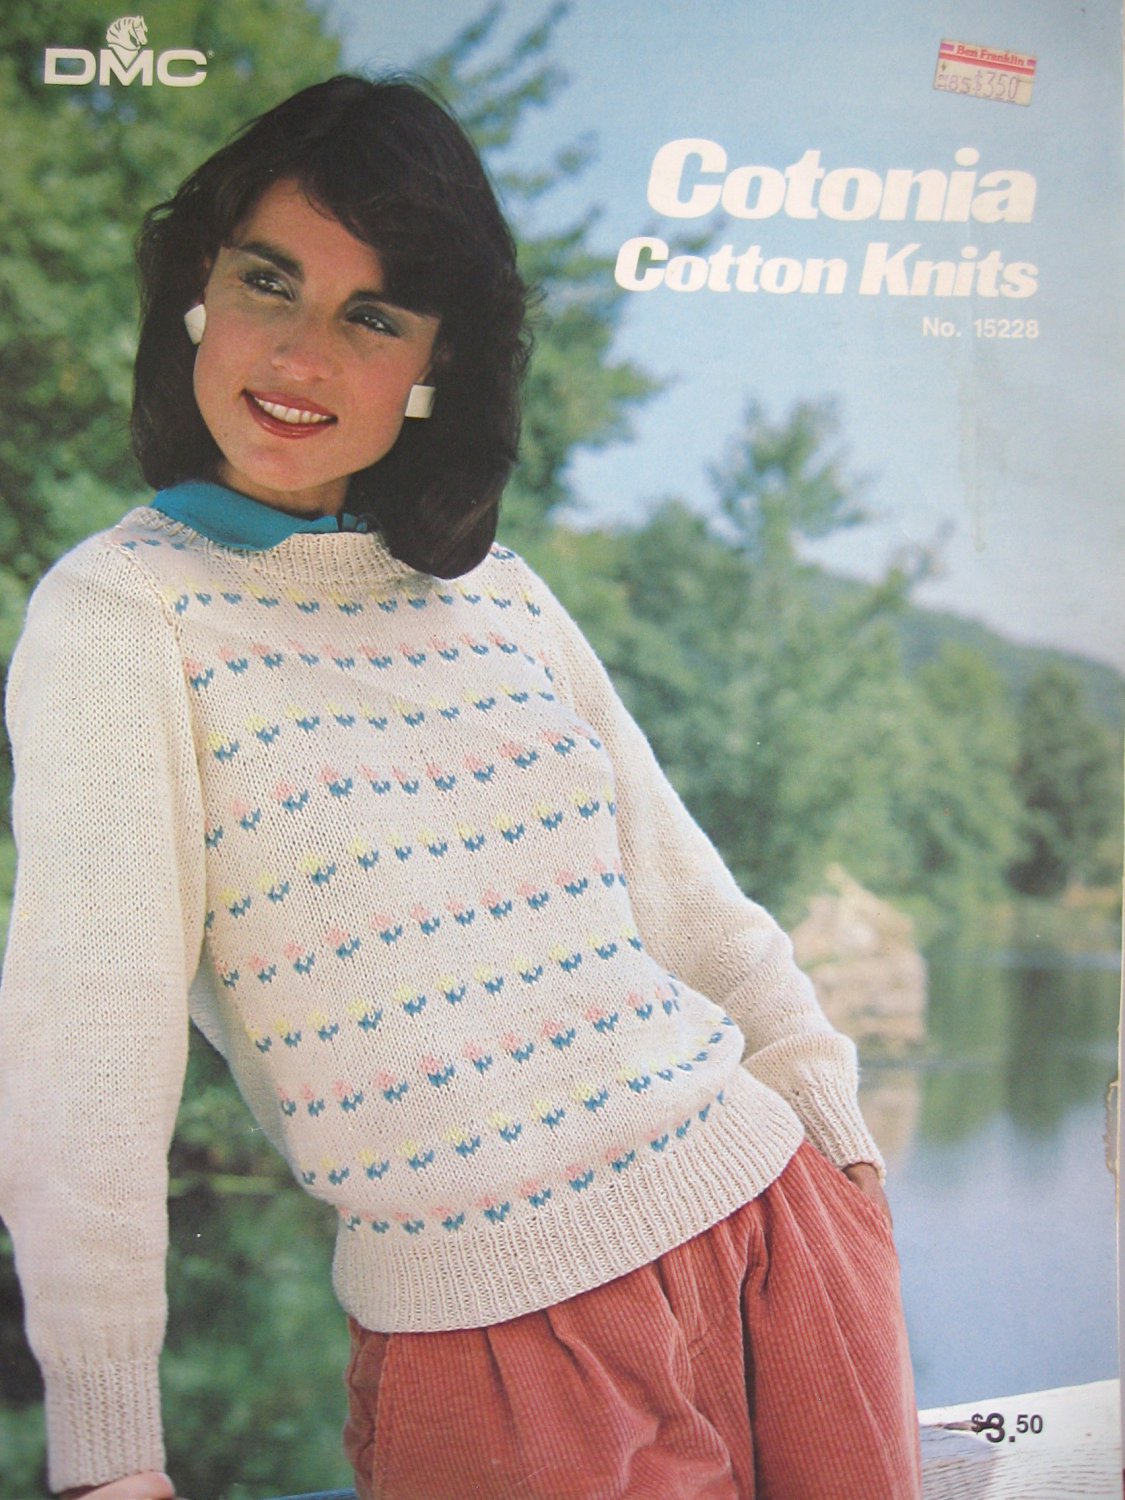 DMC Cotonia Cotton Knits no 15228 sweaters to knit